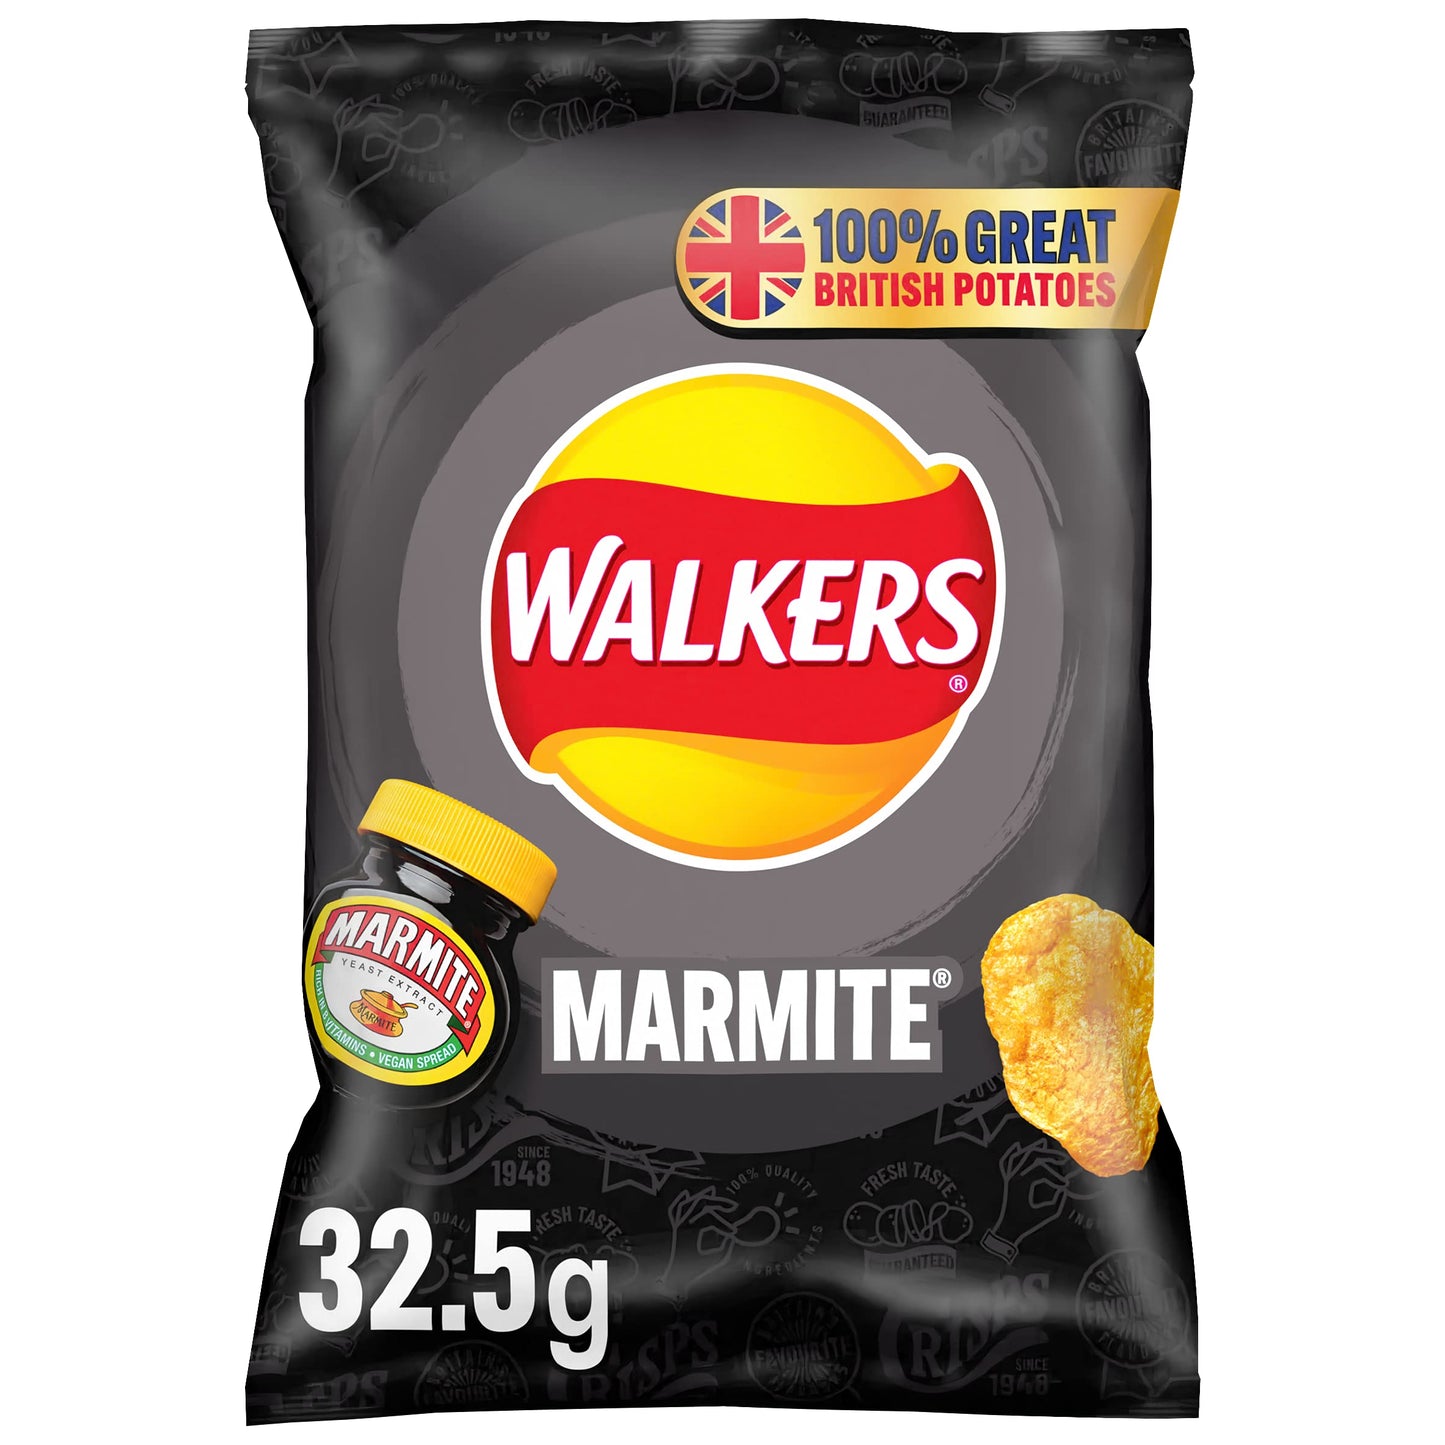 Walkers: Marmite 32.5g (1.1oz)